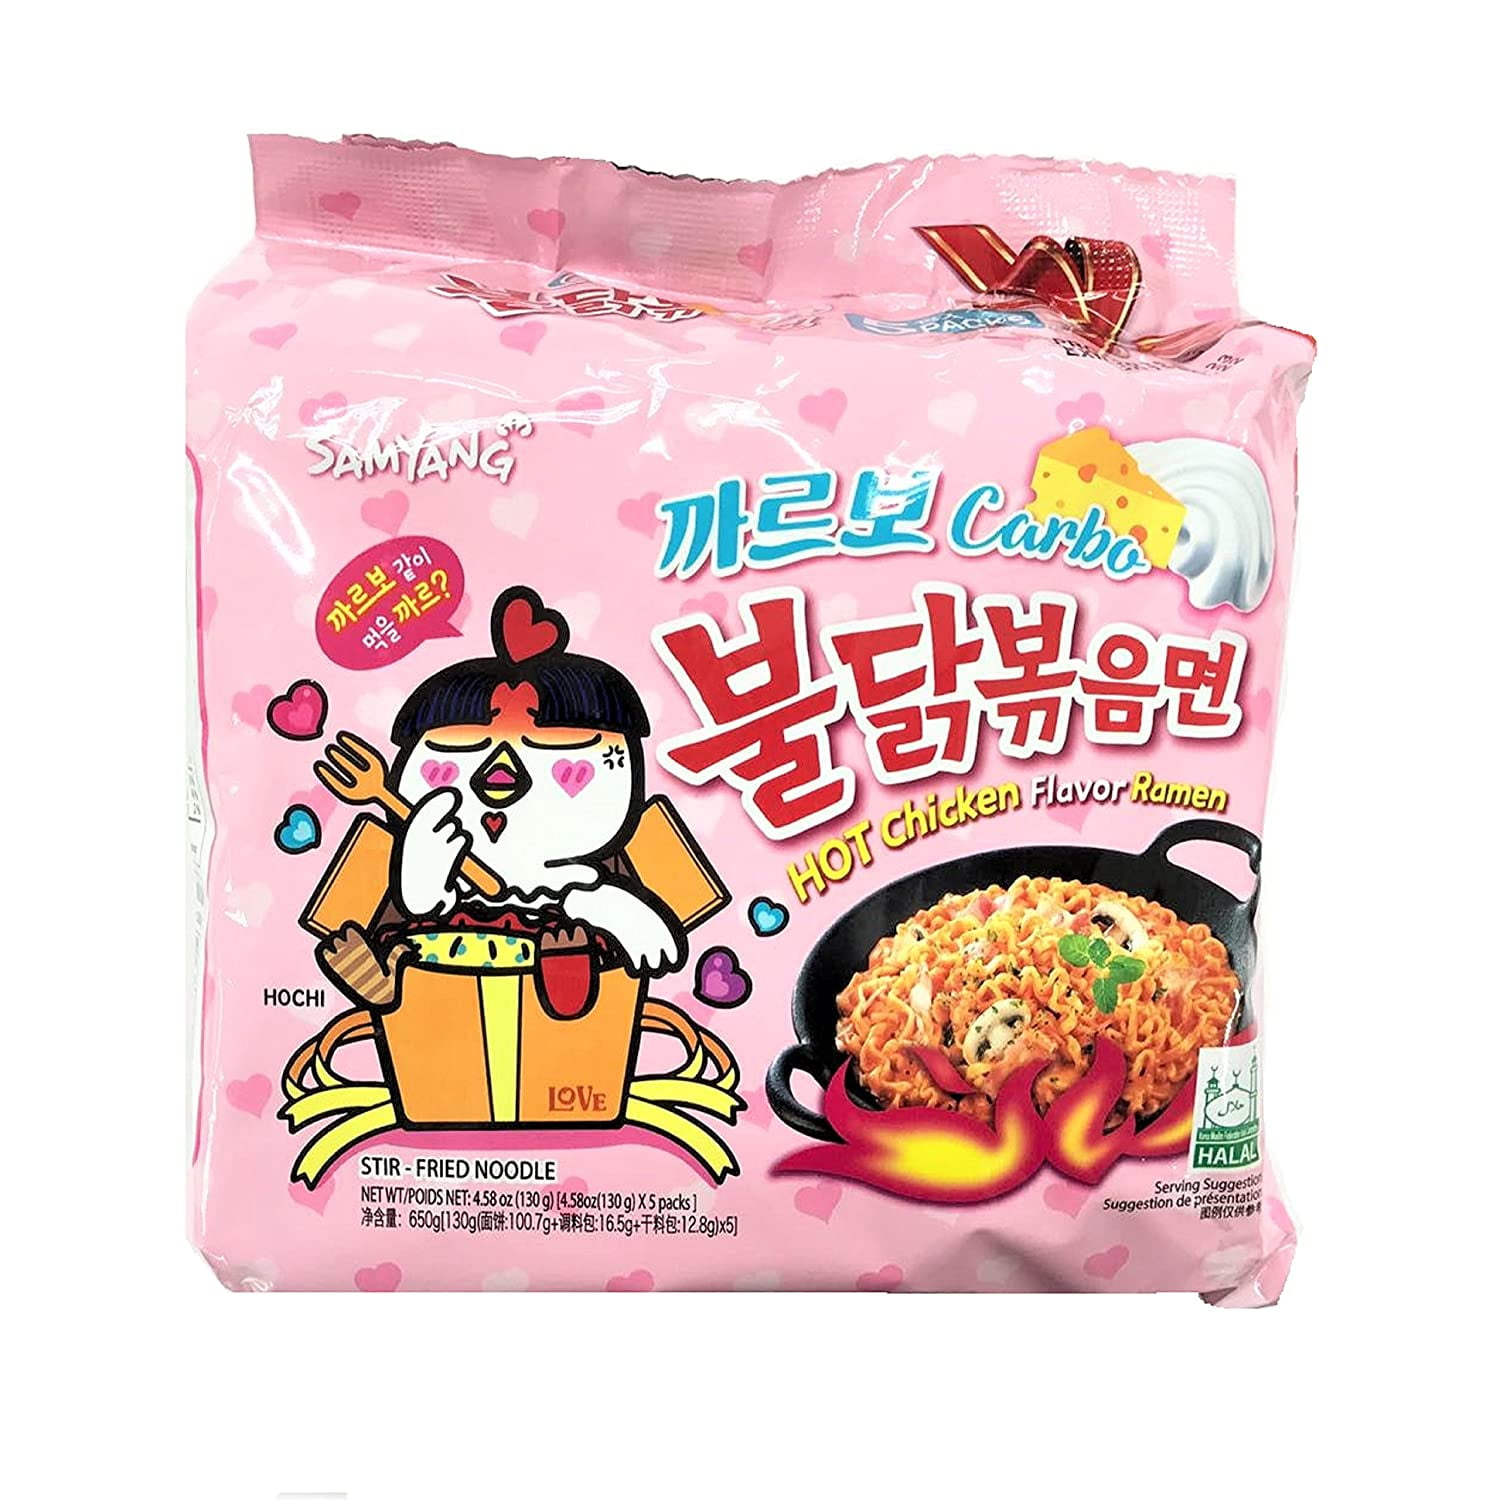 10 Packs Samyang Buldak Hot chicken stir fried ramen noodle Carbo